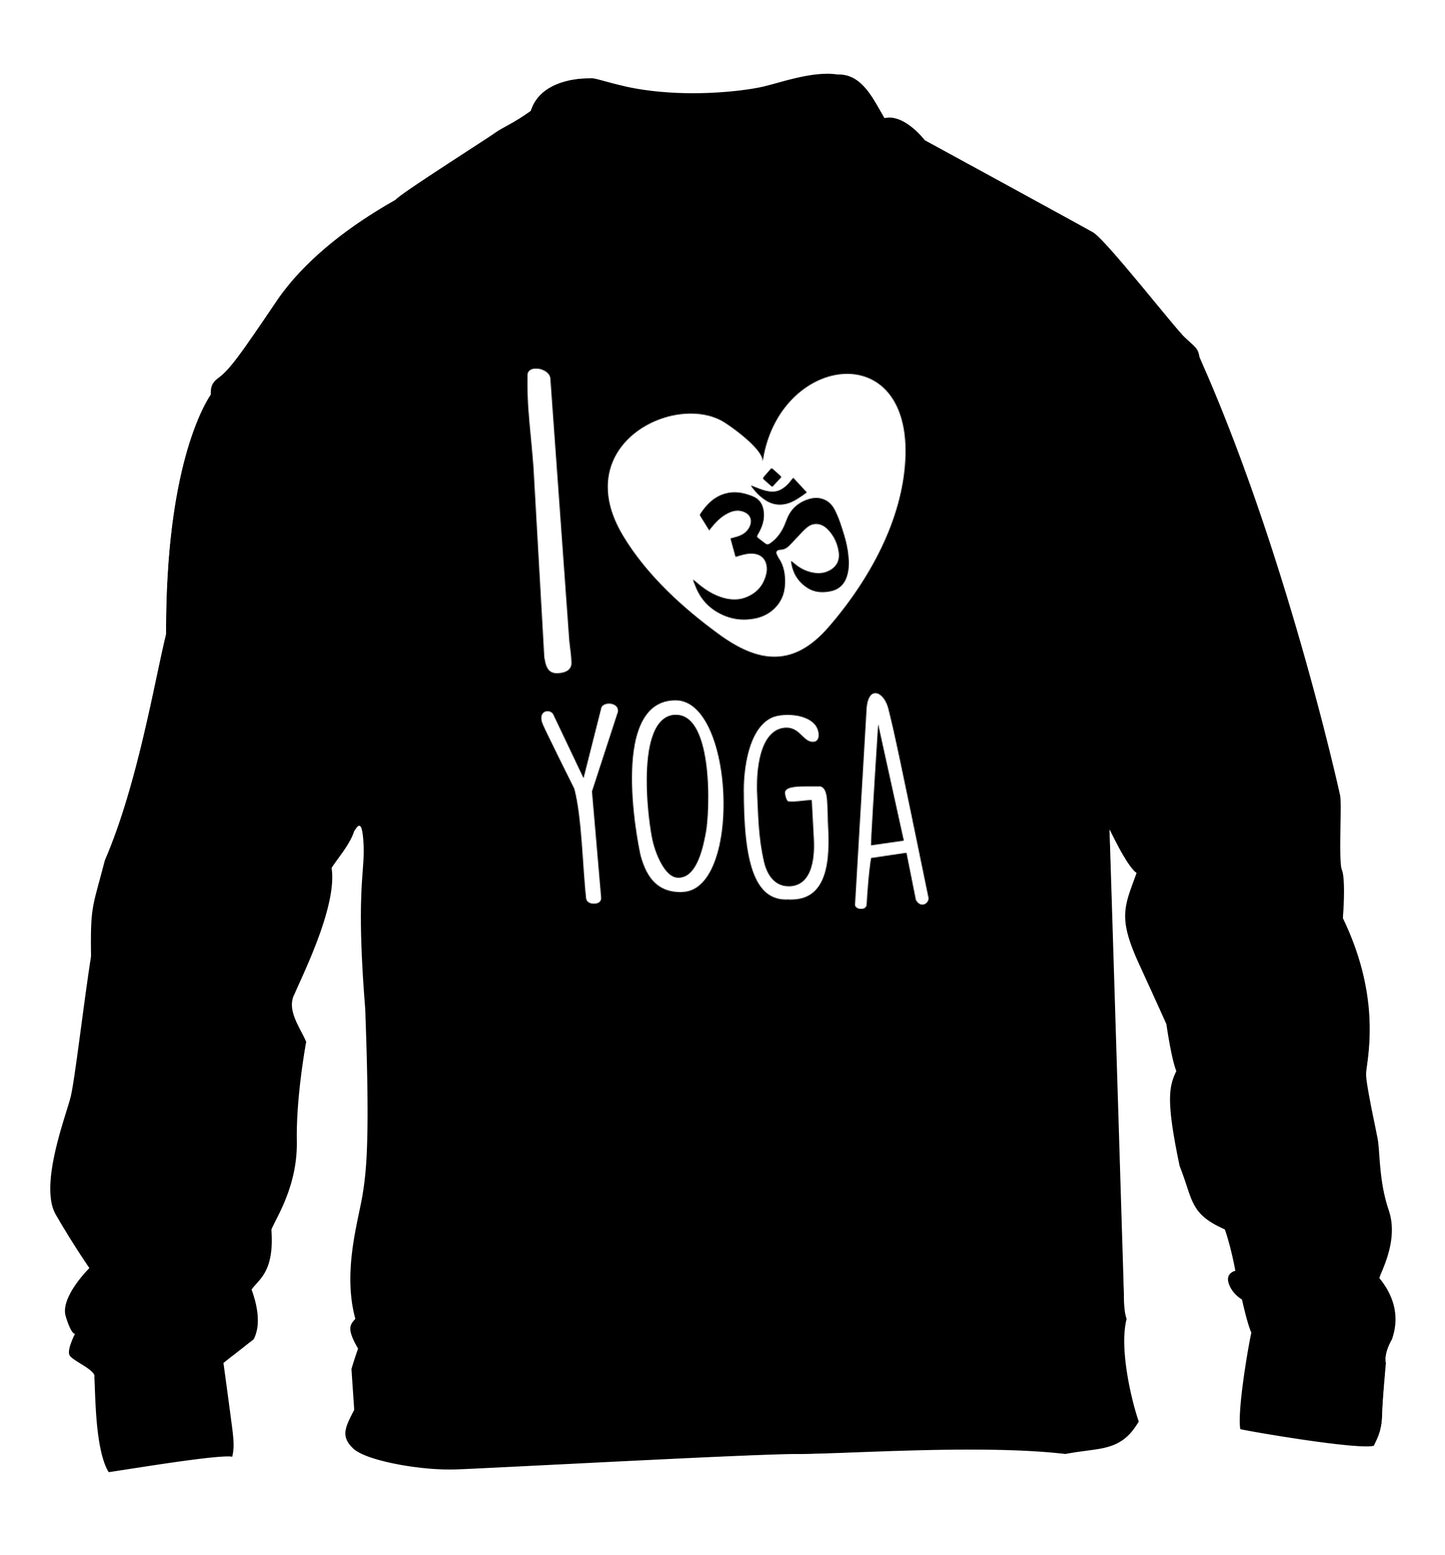 I love yoga children's black sweater 12-13 Years